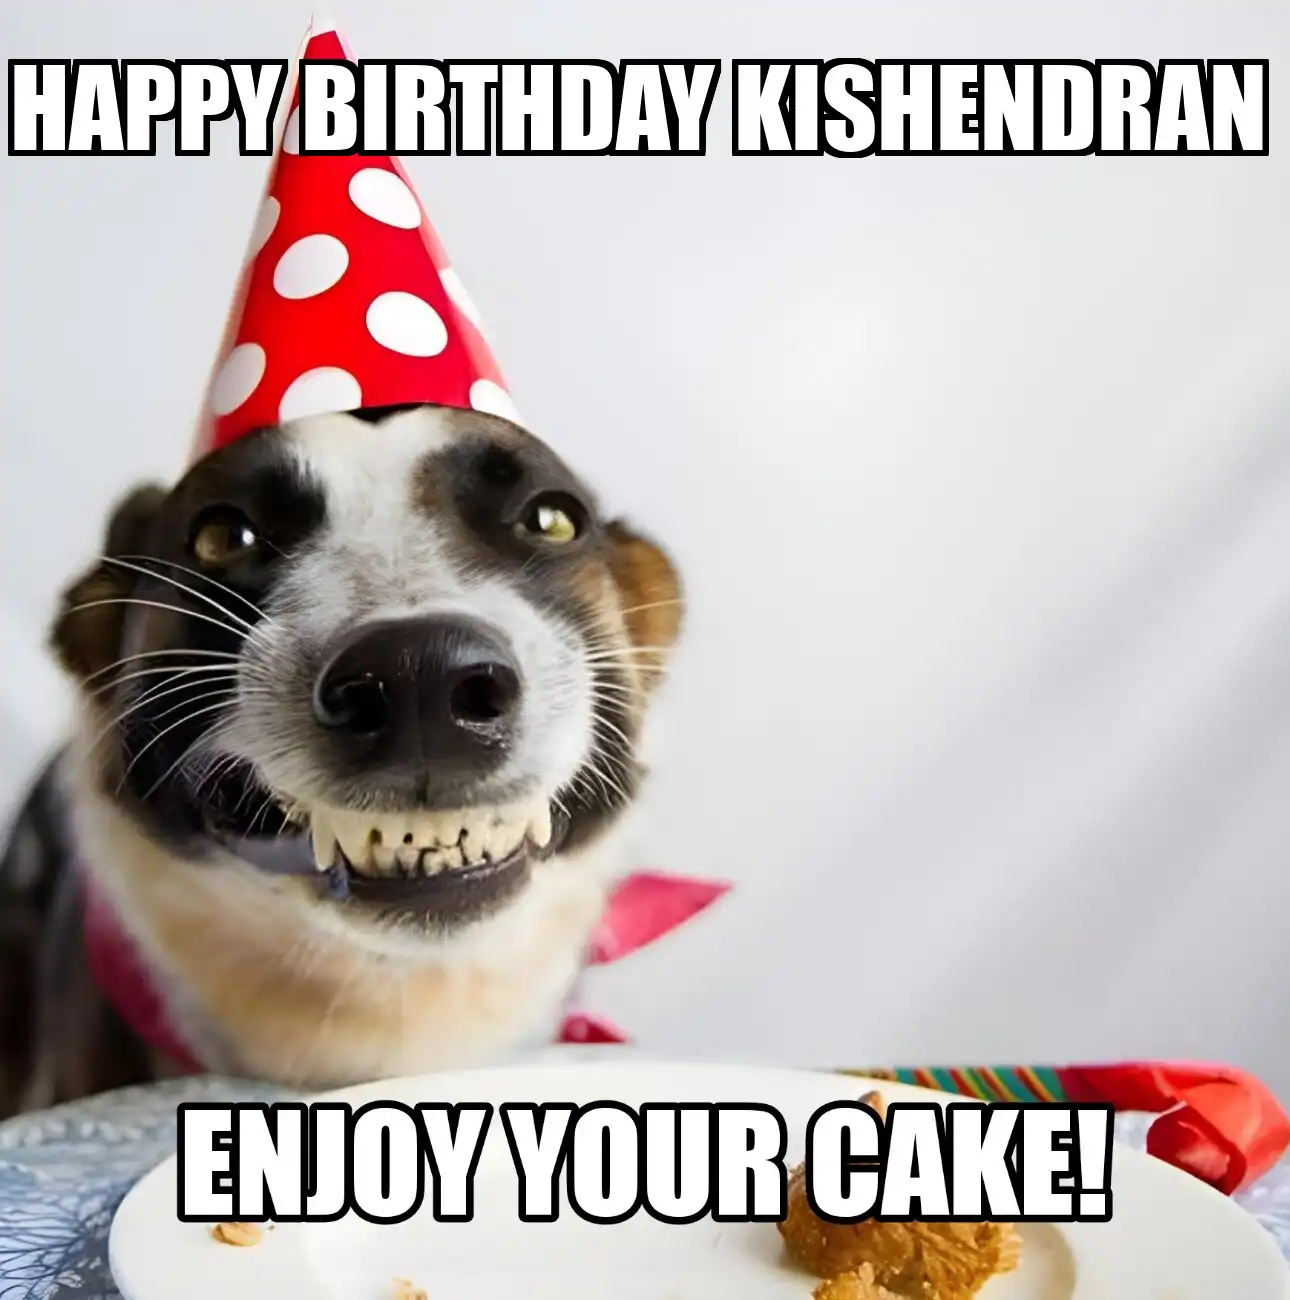 Happy Birthday Kishendran Enjoy Your Cake Dog Meme